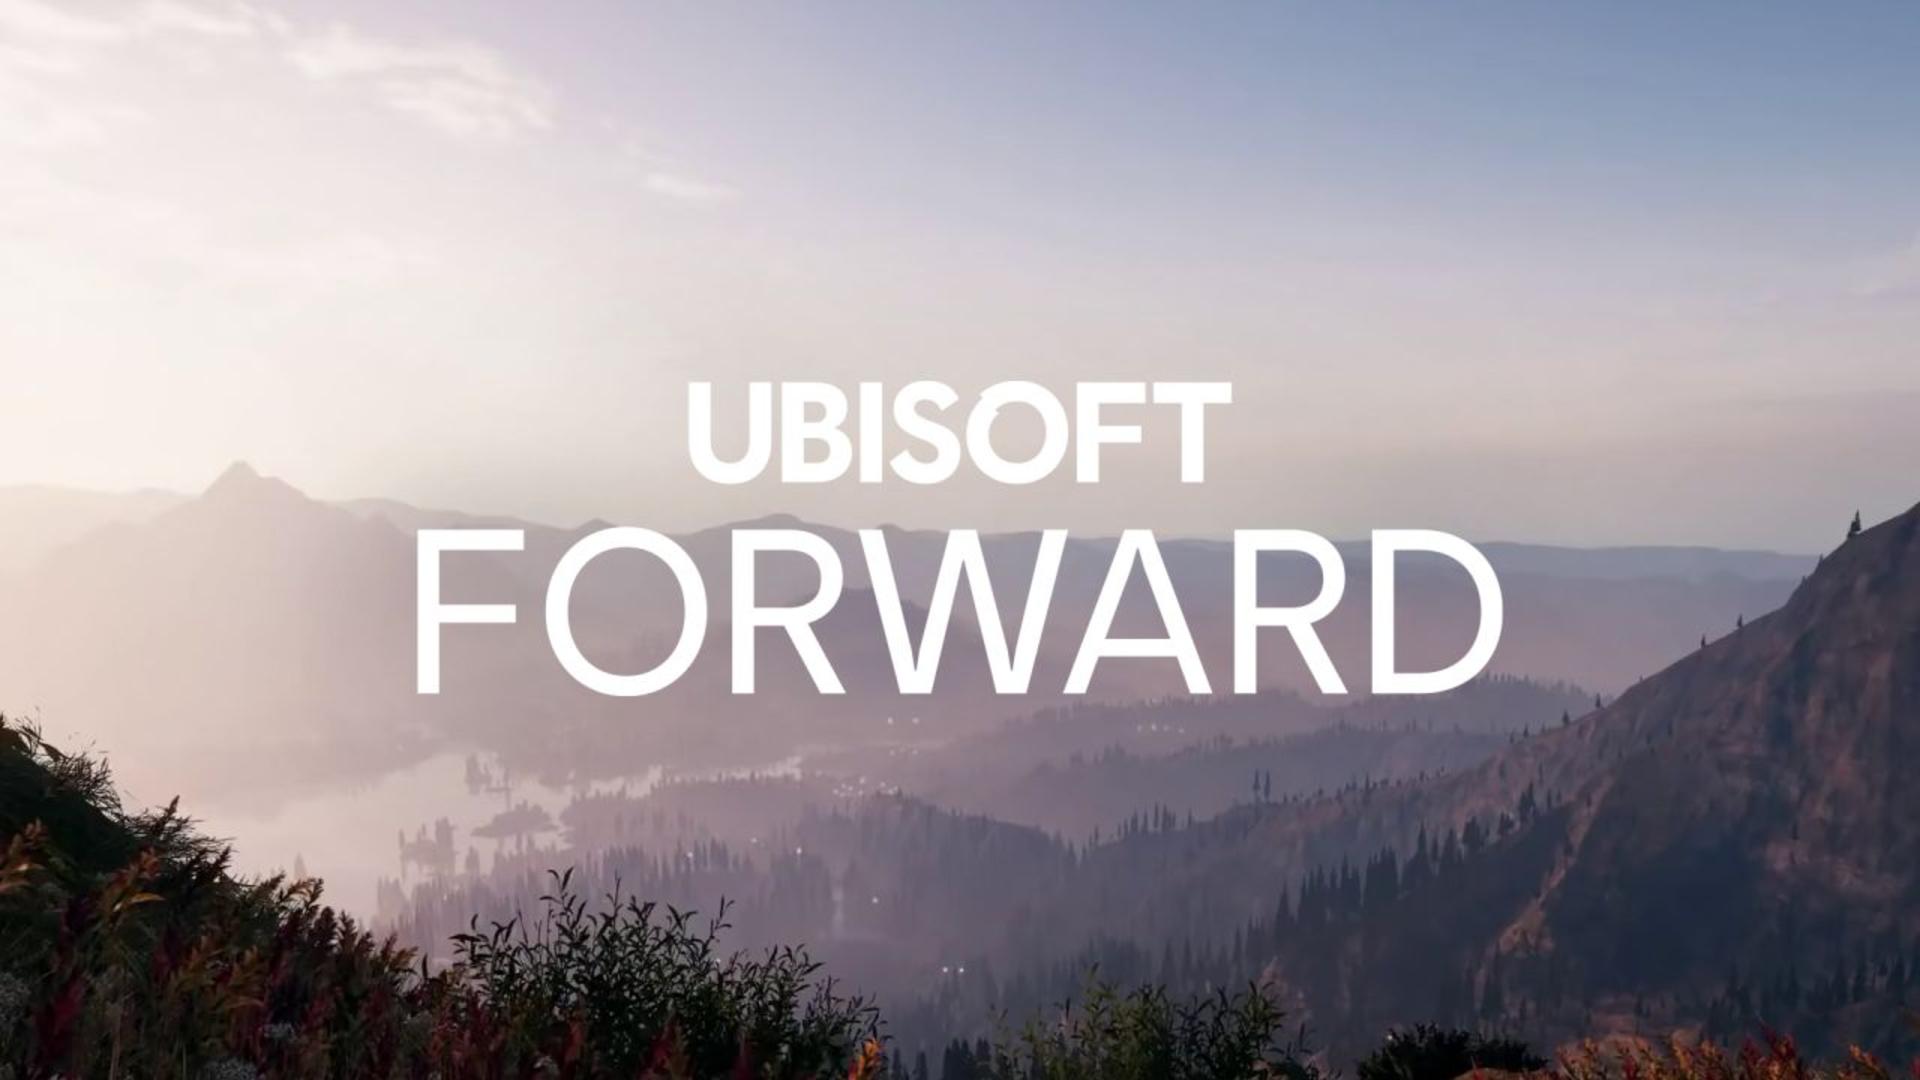 Ubisoft forward será o evento online em julho | f19f21a1 ubisoft forward | ubisoft forward notícias